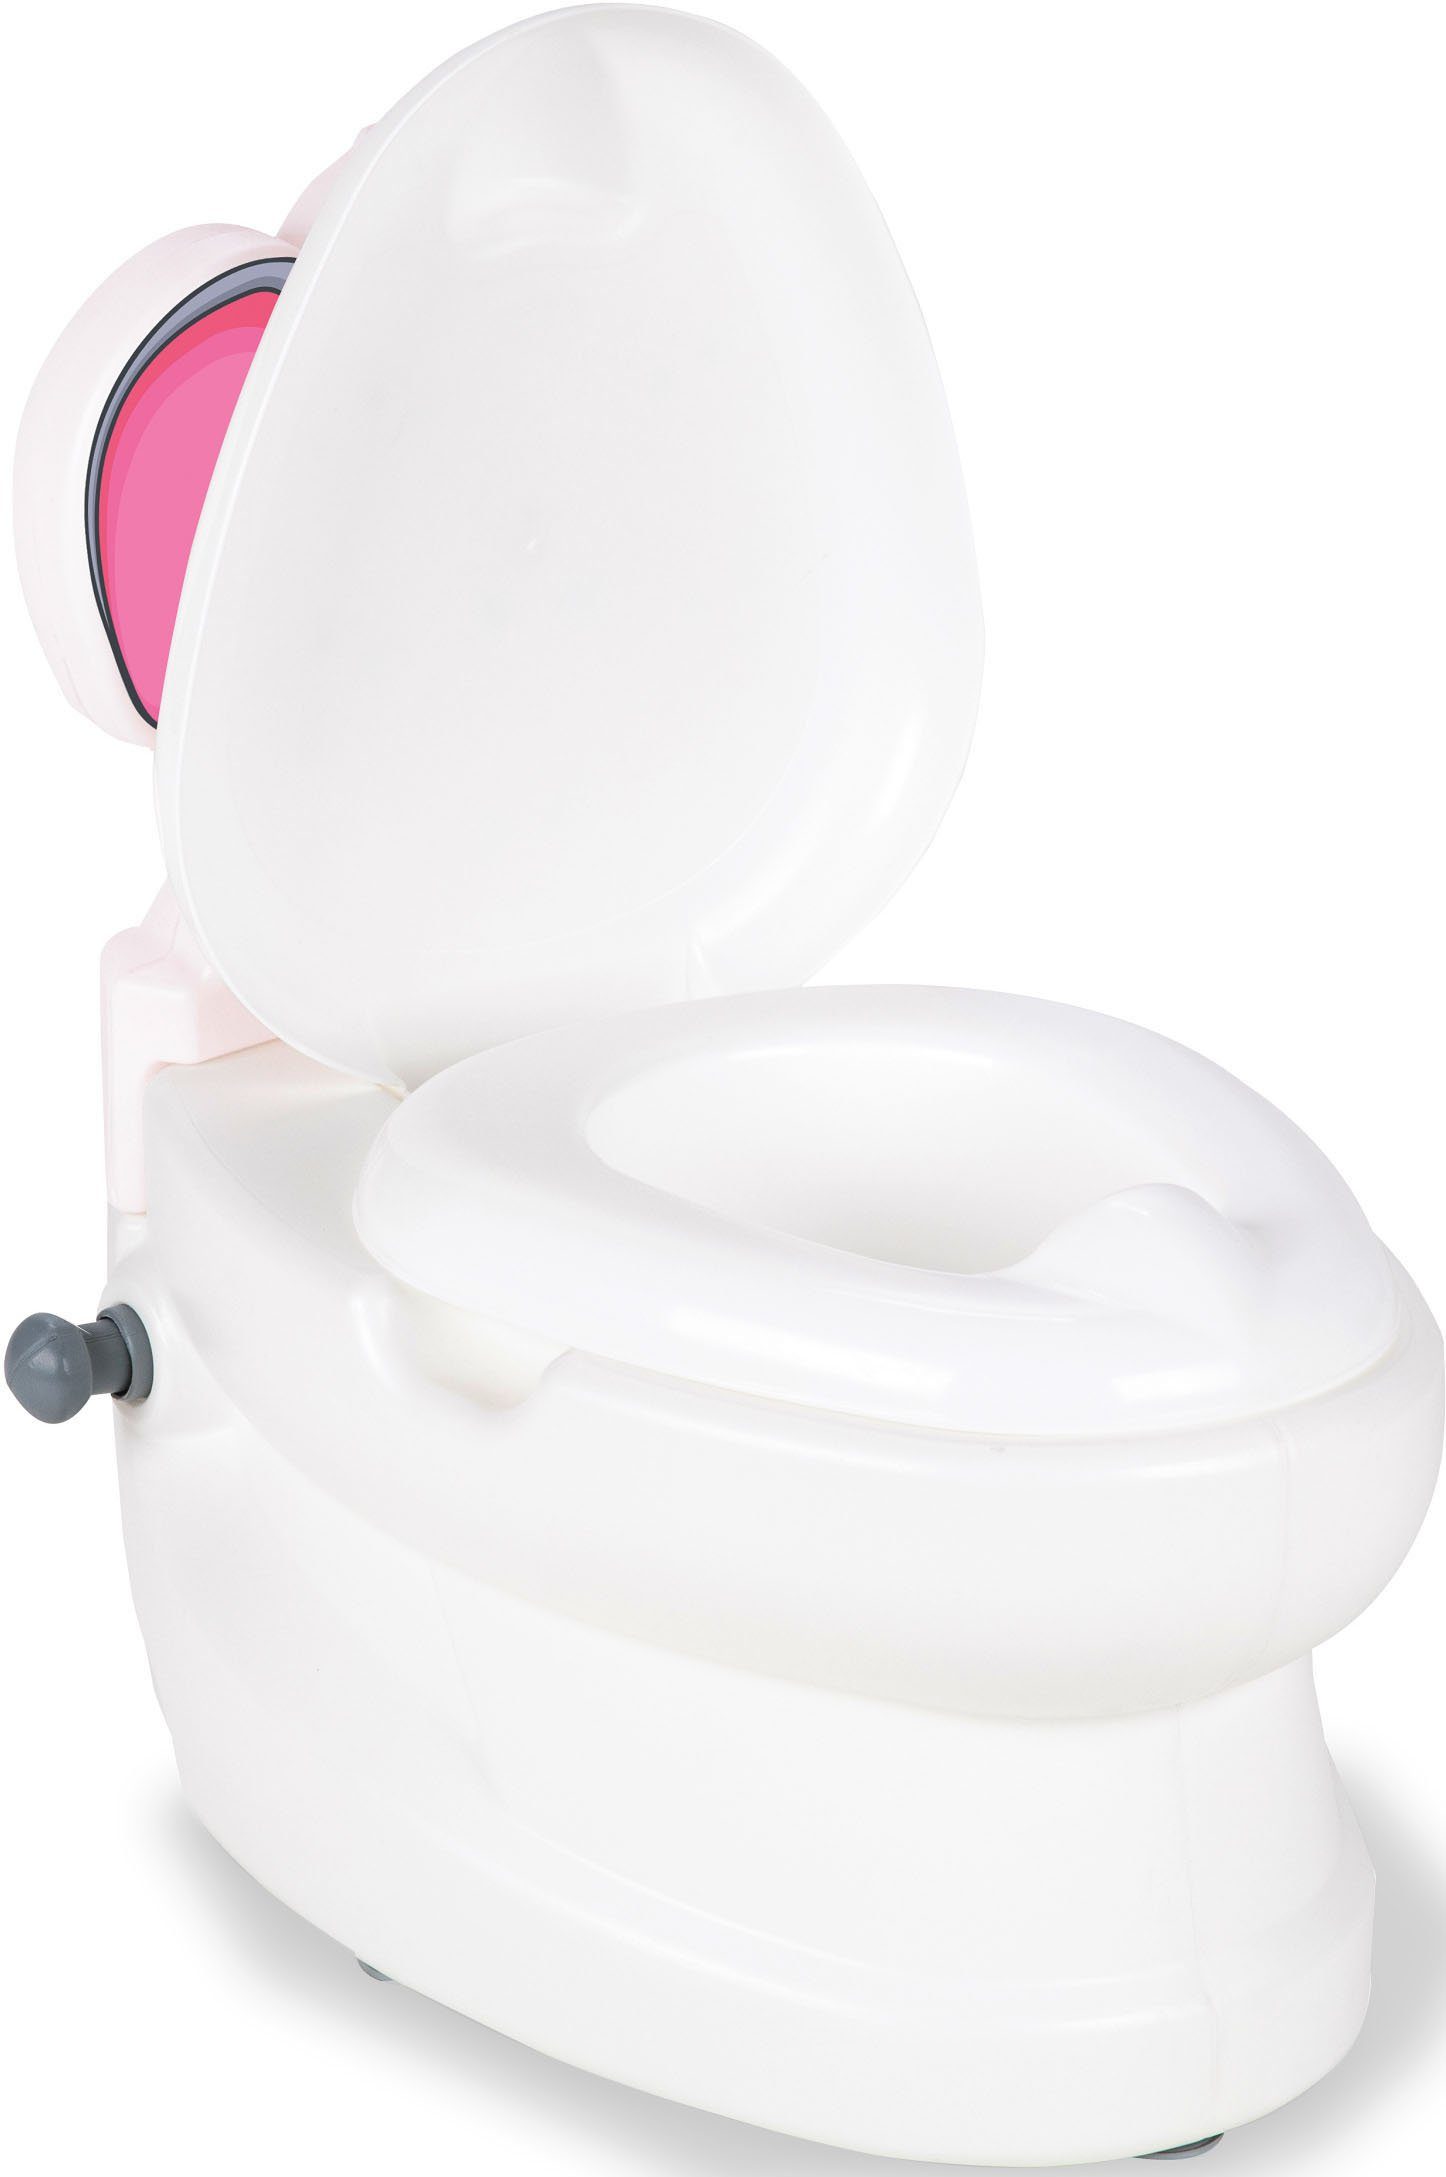 Jamara Toilettentrainer Toilettenpapierhalter Meine mit und Elefant, kleine Spülsound Toilette